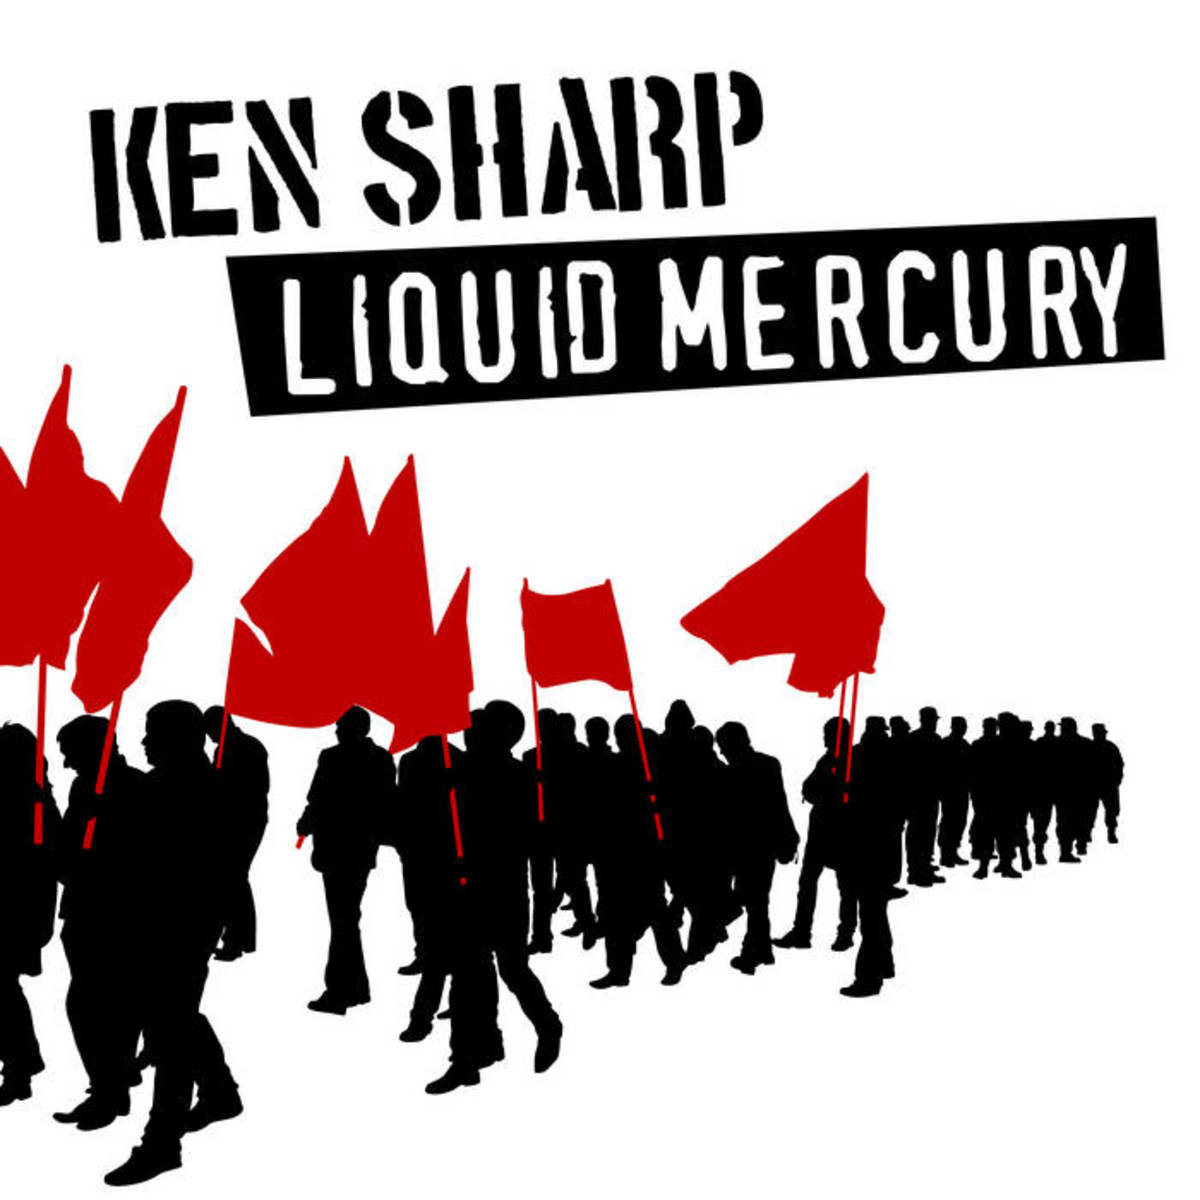 liquid mercury